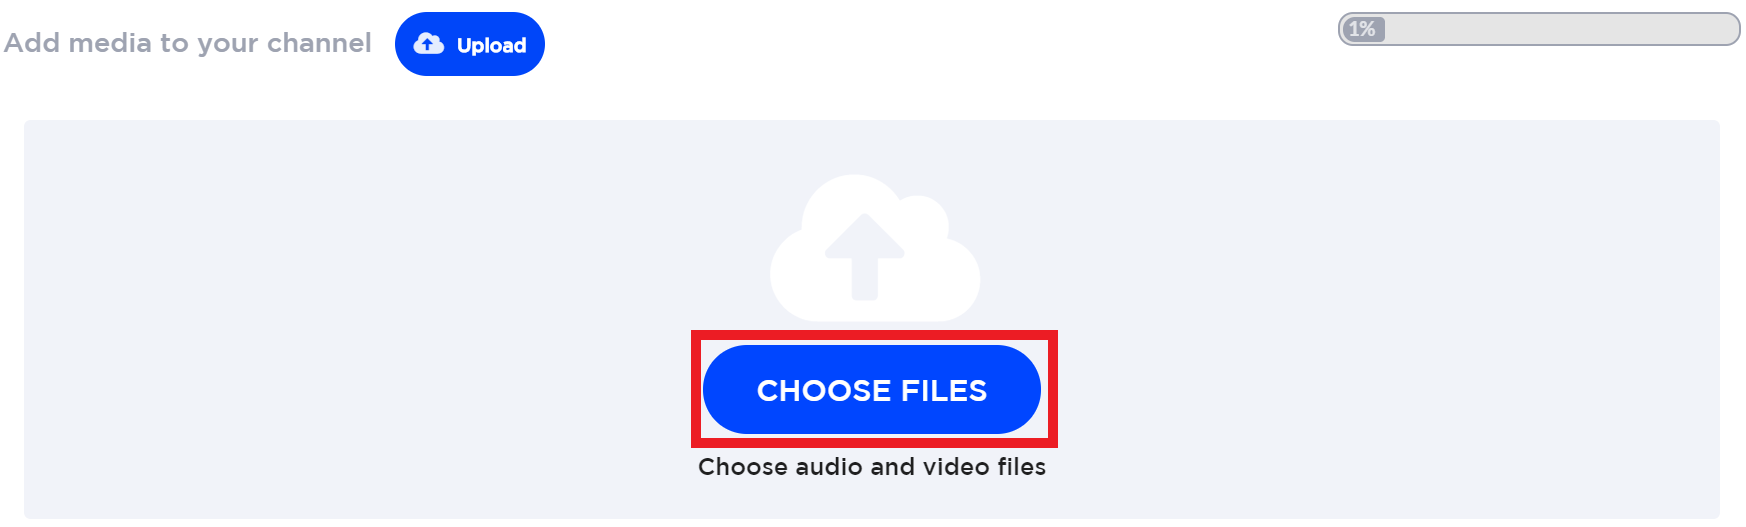 choose-files1